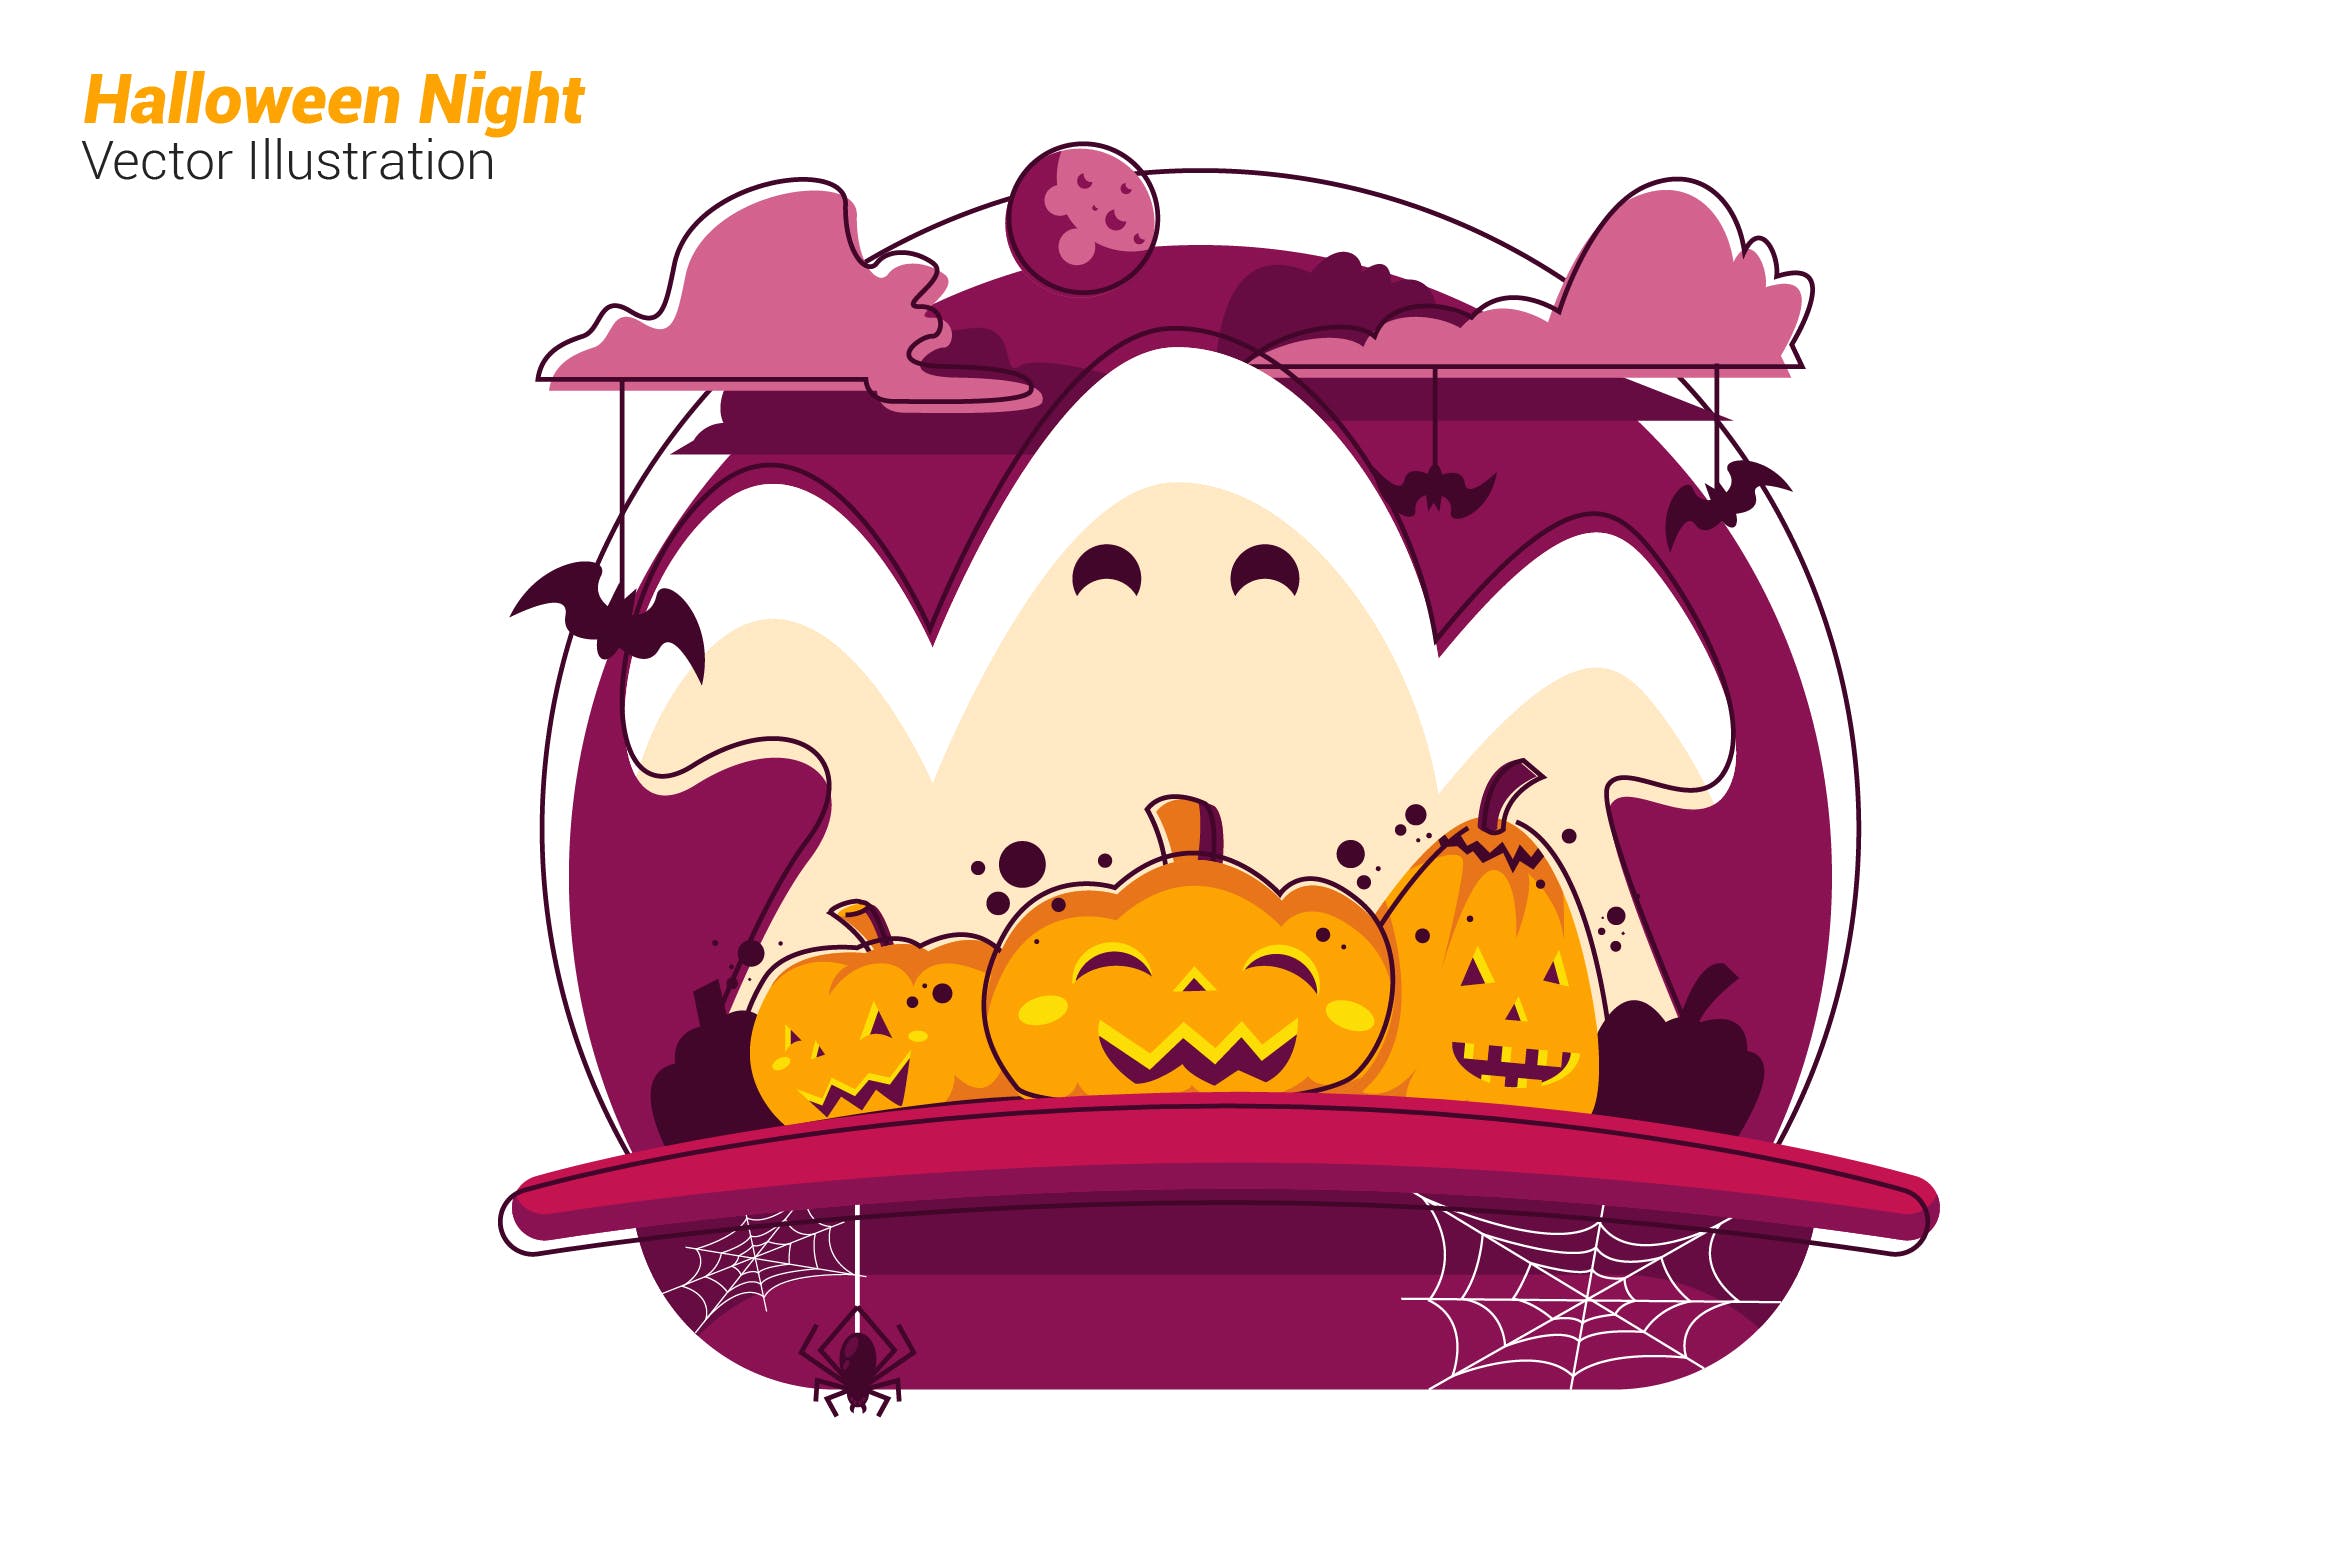 万圣节之夜场景矢量插画第一素材精选素材 Halloween Night – Vector Illustration插图